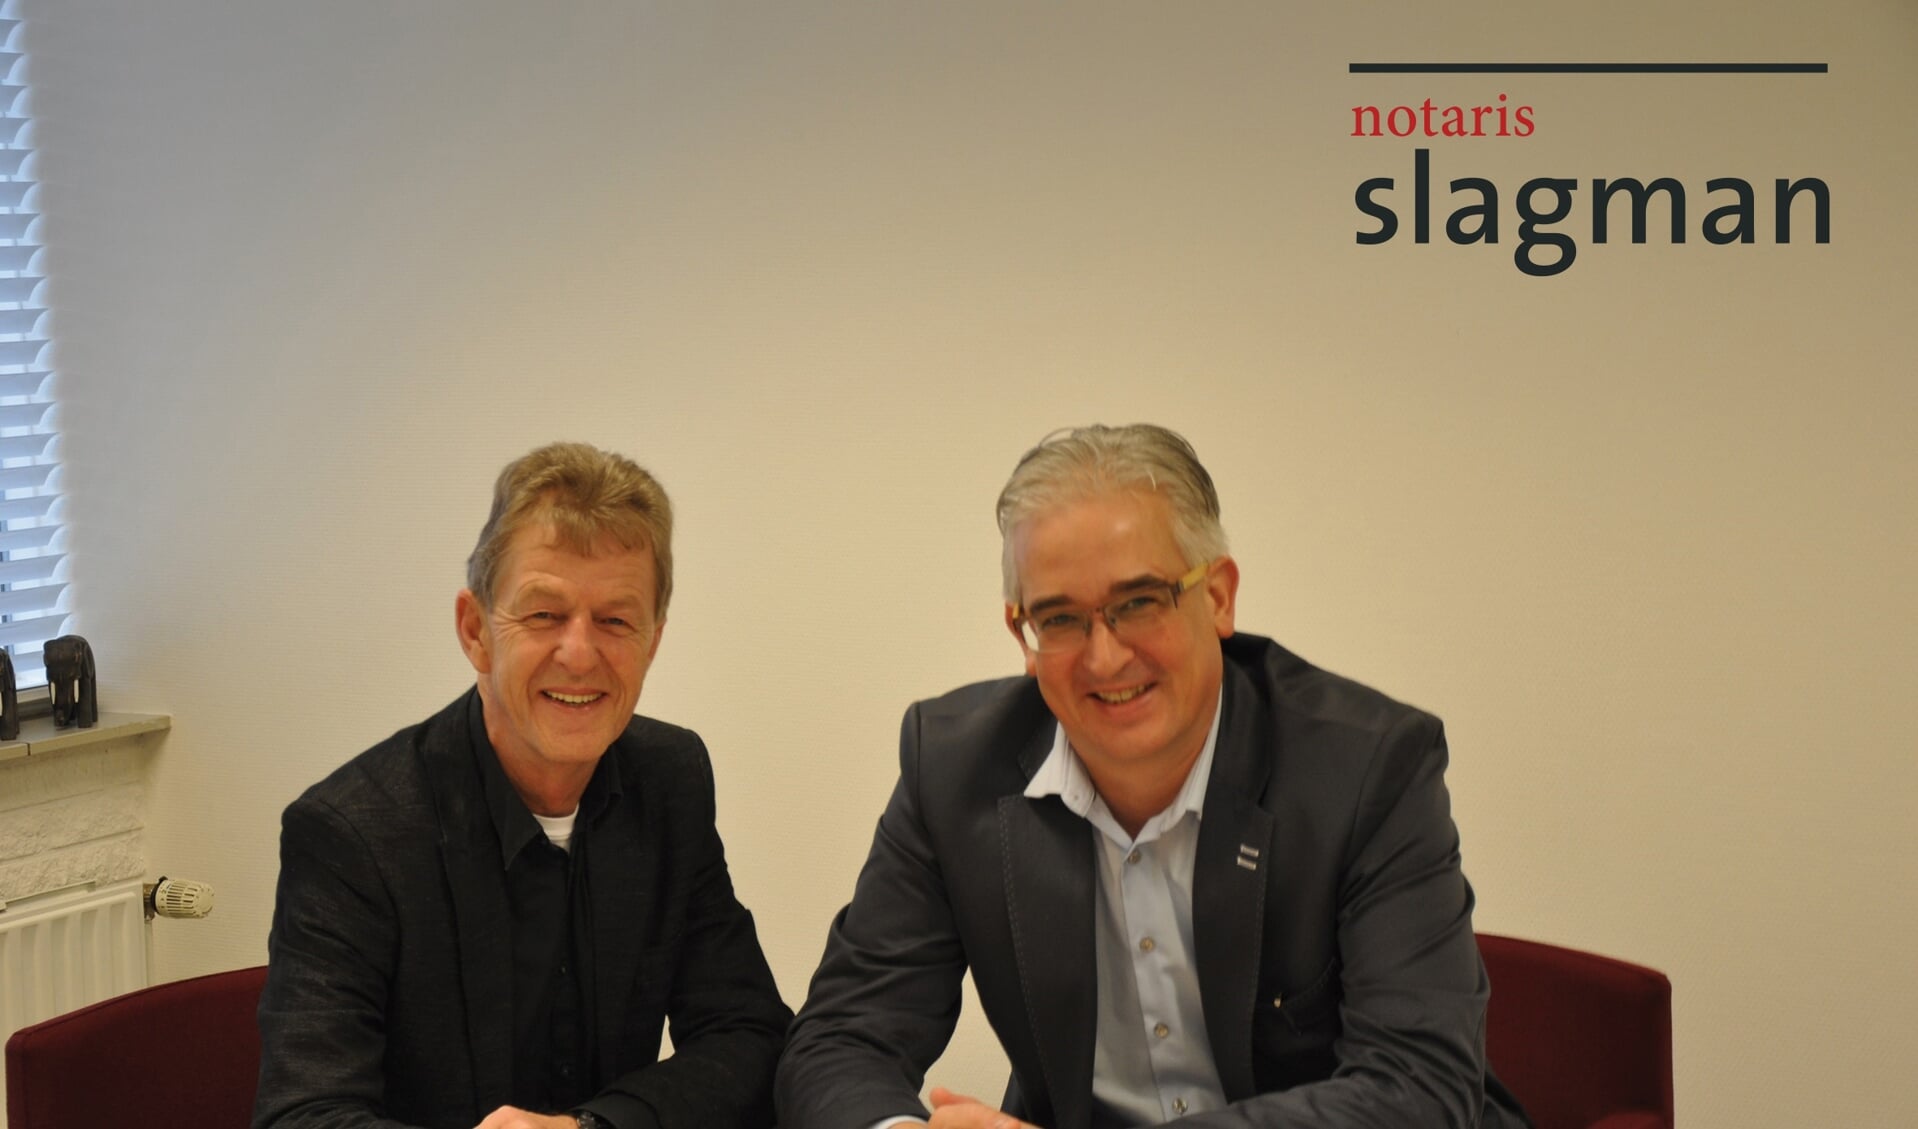 Het notariskantoor wordt geleid door notaris Allard Slagman (rechts) in samenwerking met de notarisklerk Geert Veenstra.